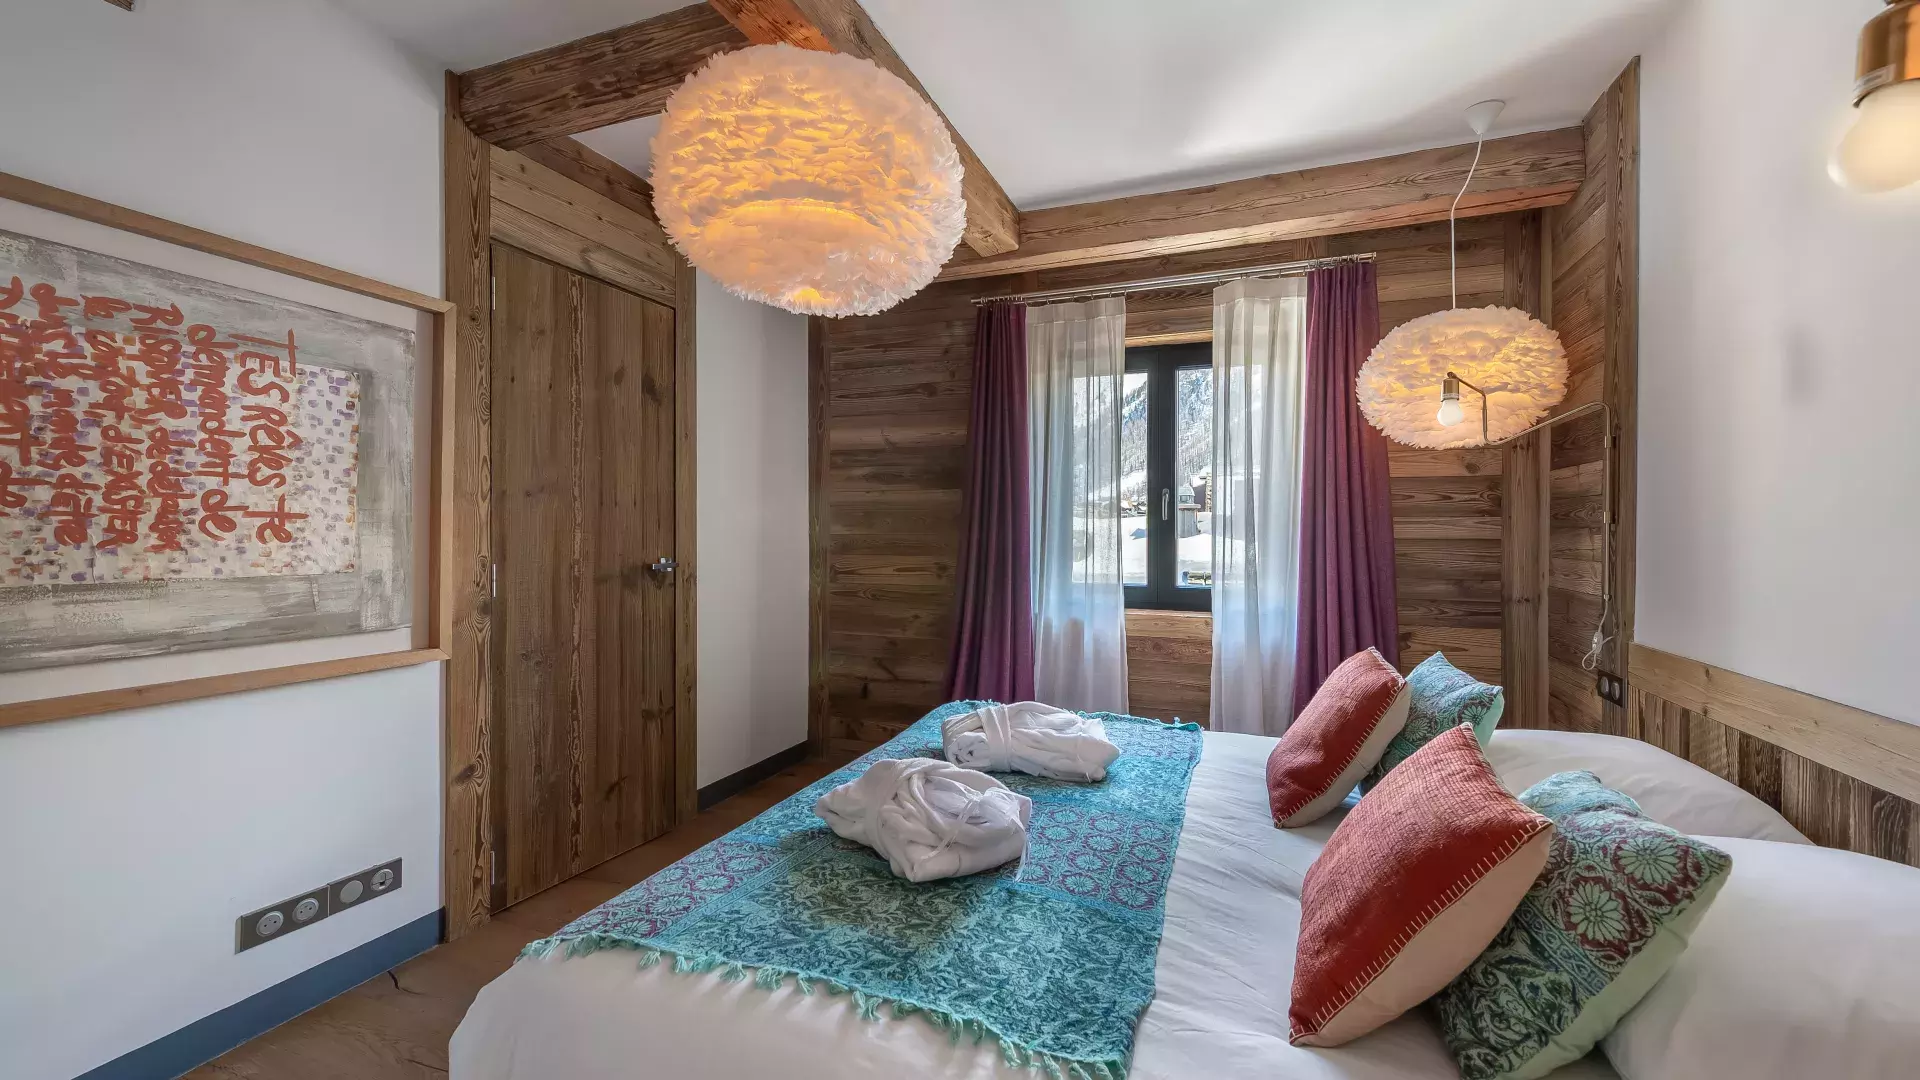 Appartement Penthouse Savoie 1 - Location chalets Covarel - Val d'Isère Alpes - France - Chambre 4